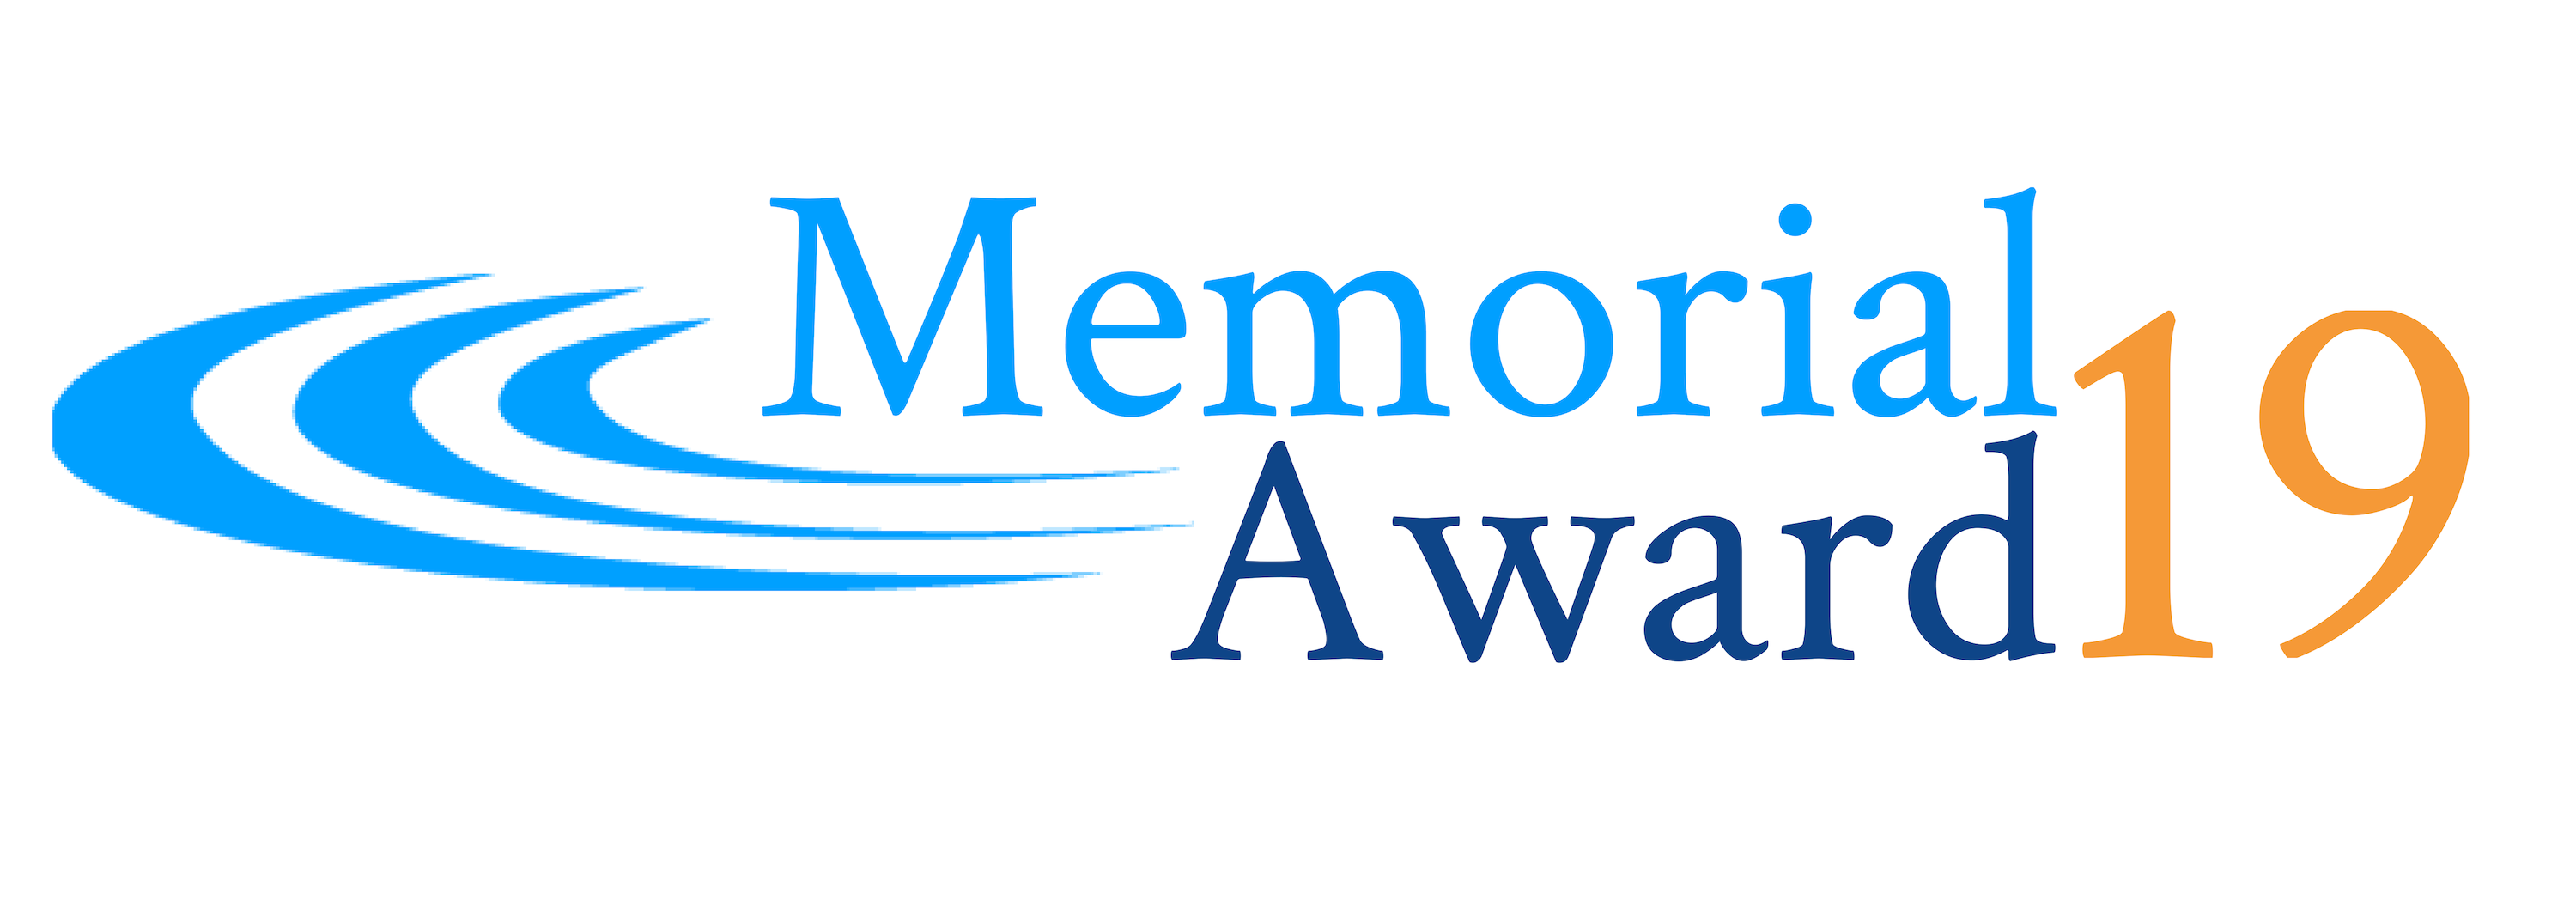 Memorial Award 2019